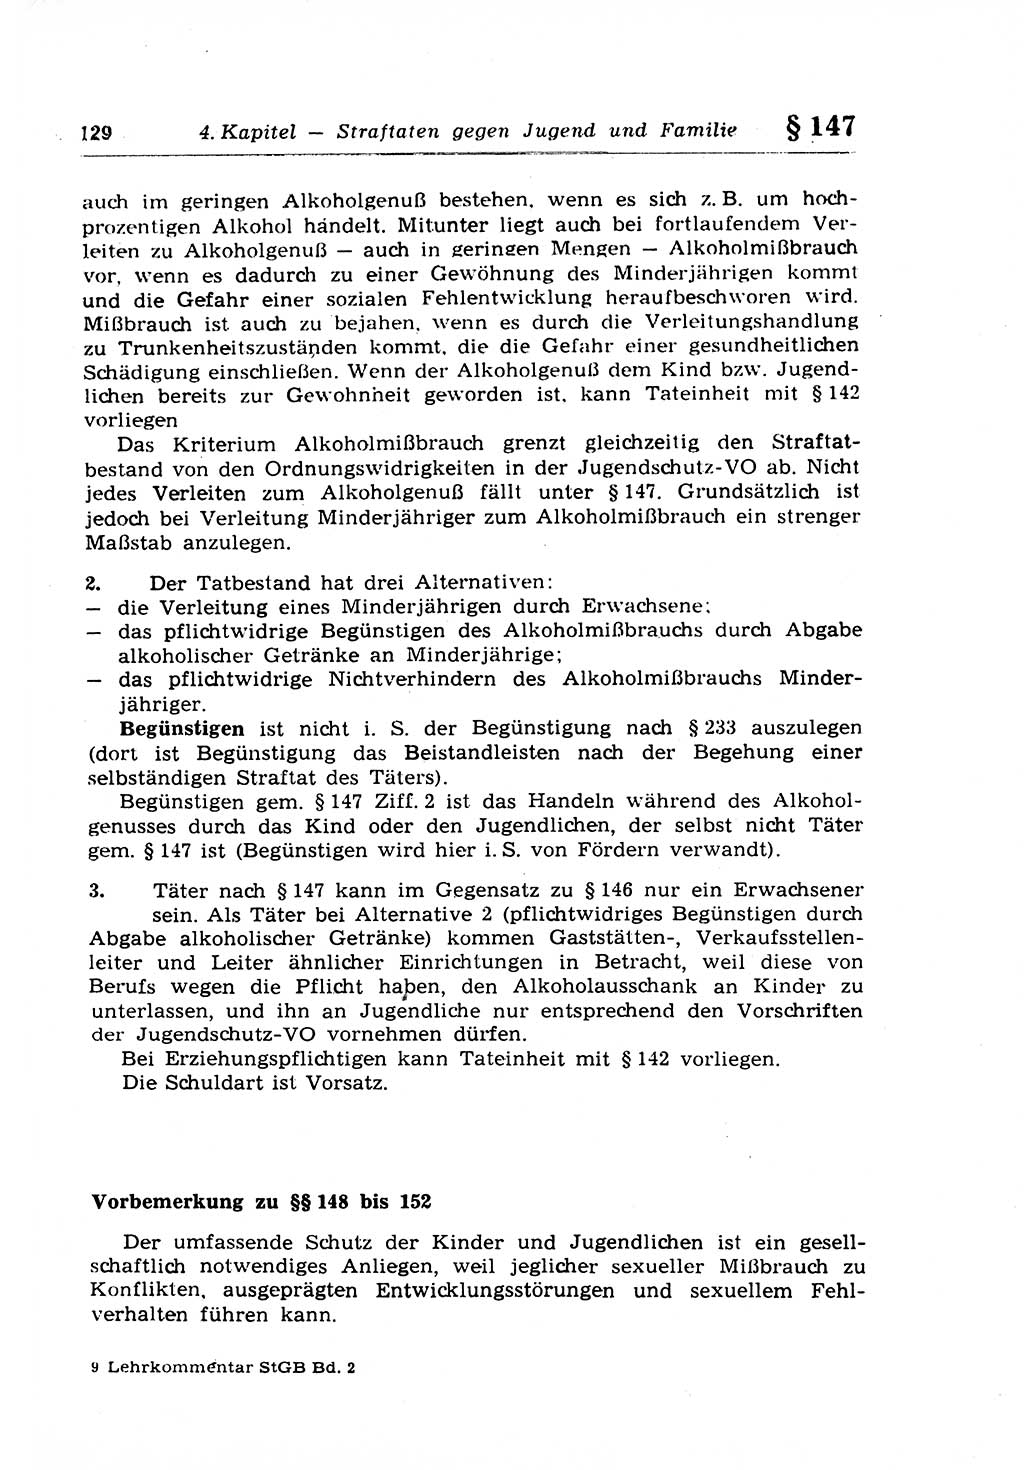 Strafrecht der Deutschen Demokratischen Republik (DDR), Lehrkommentar zum Strafgesetzbuch (StGB), Besonderer Teil 1970, Seite 129 (Strafr. DDR Lehrkomm. StGB BT 1970, S. 129)